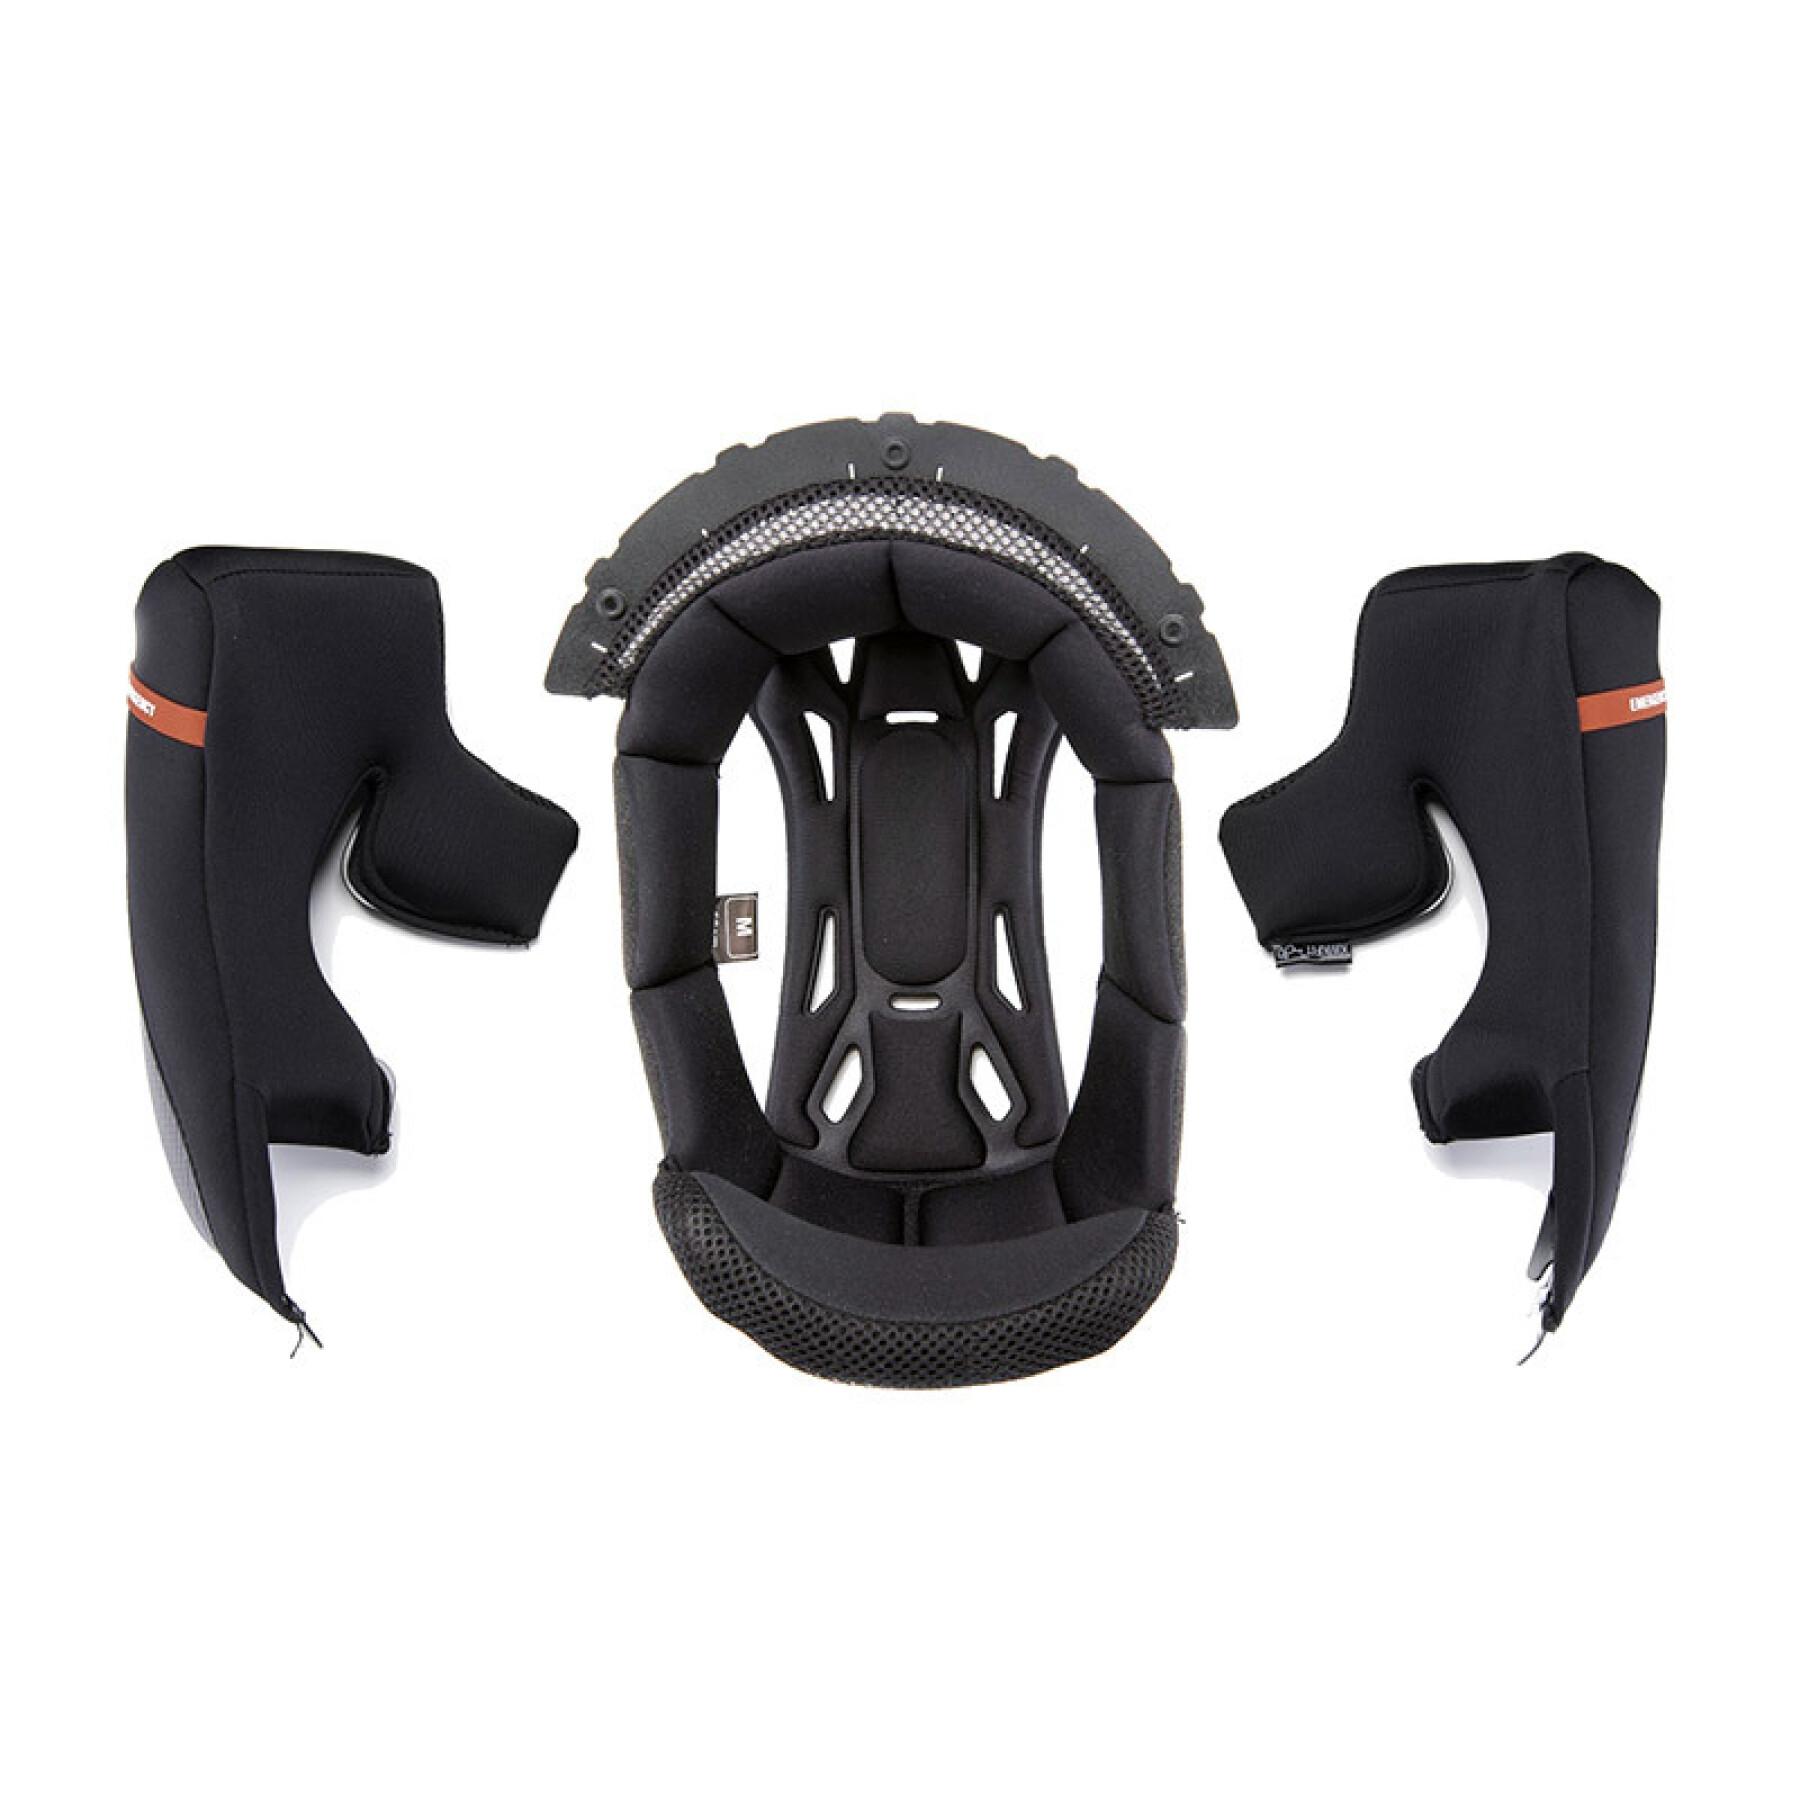 Forro de capacete de motociclista Scorpion Exo-520 Evo Air KW2